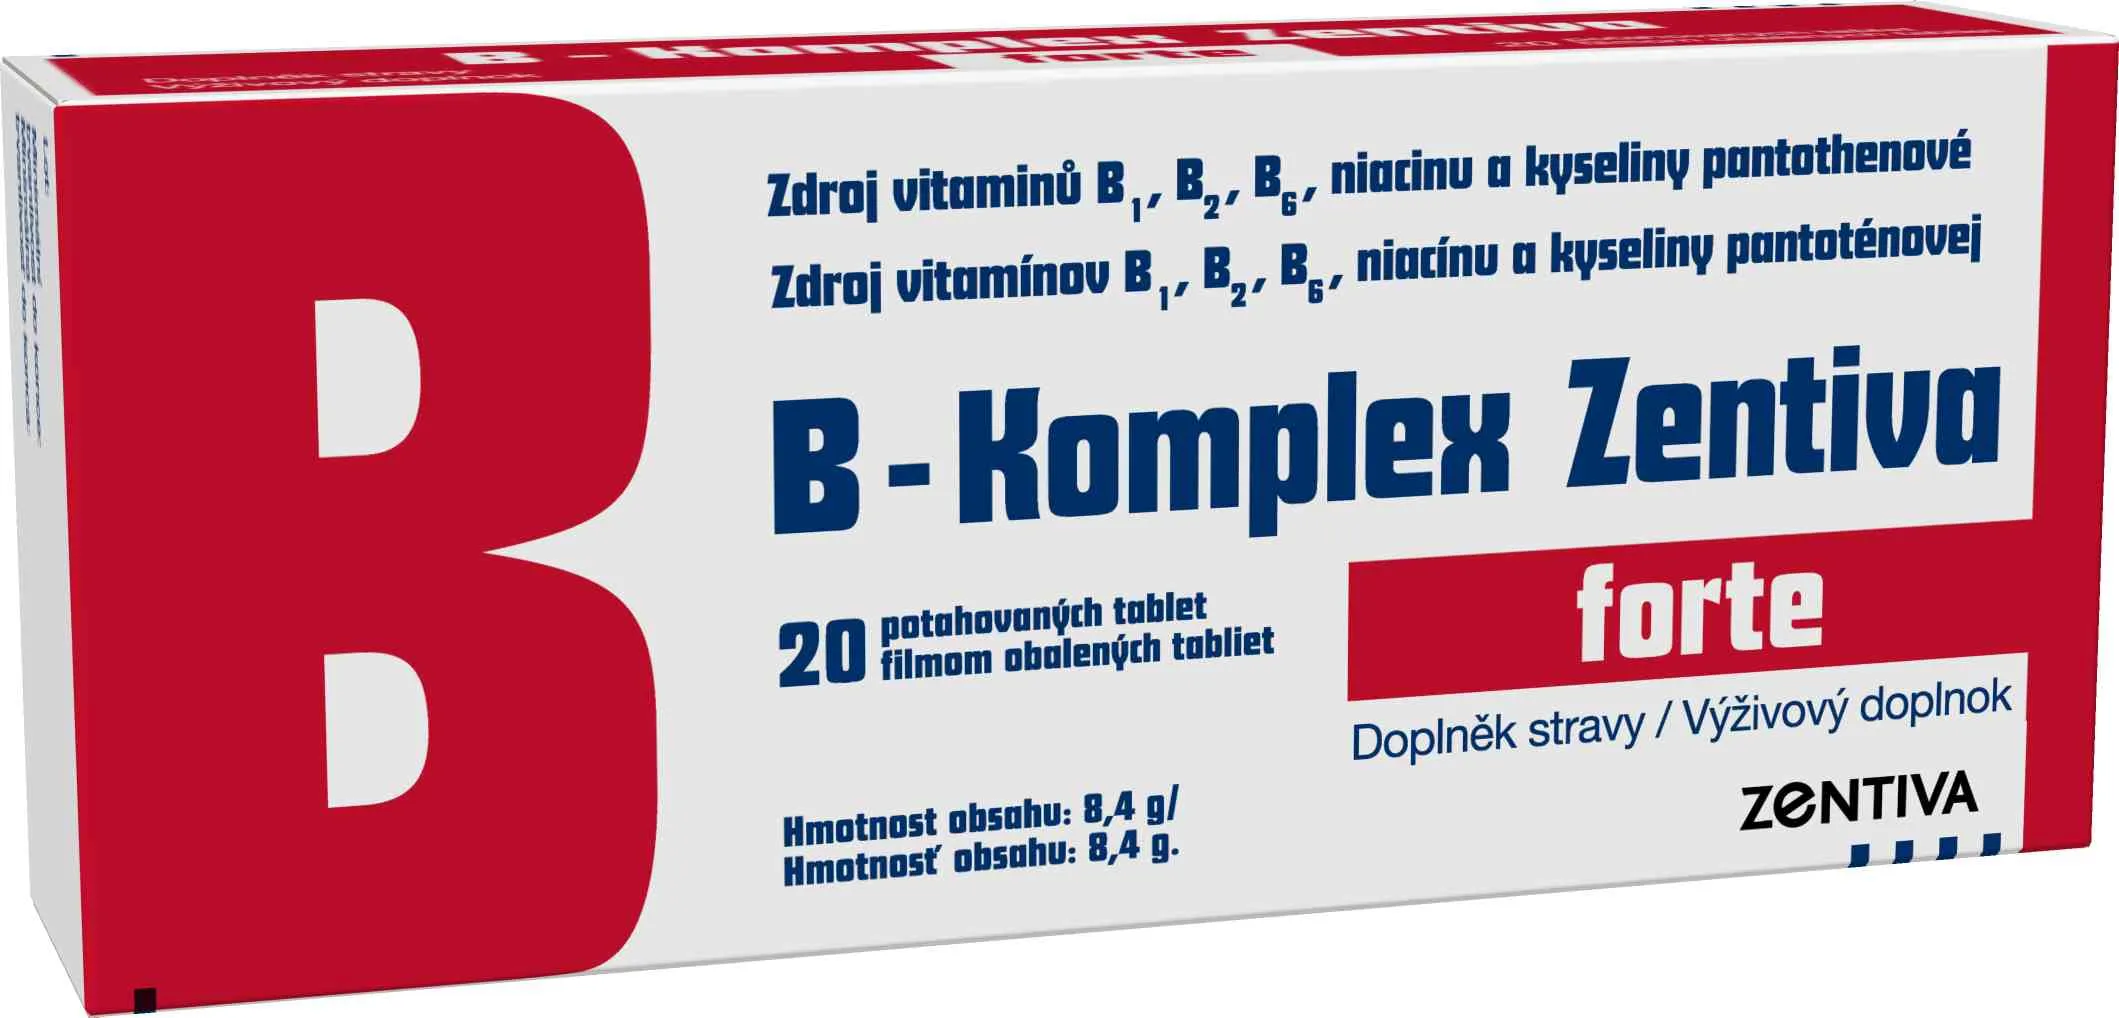 B-Komplex Zentiva forte 20 tbl 1×20 tbl, vitamín B